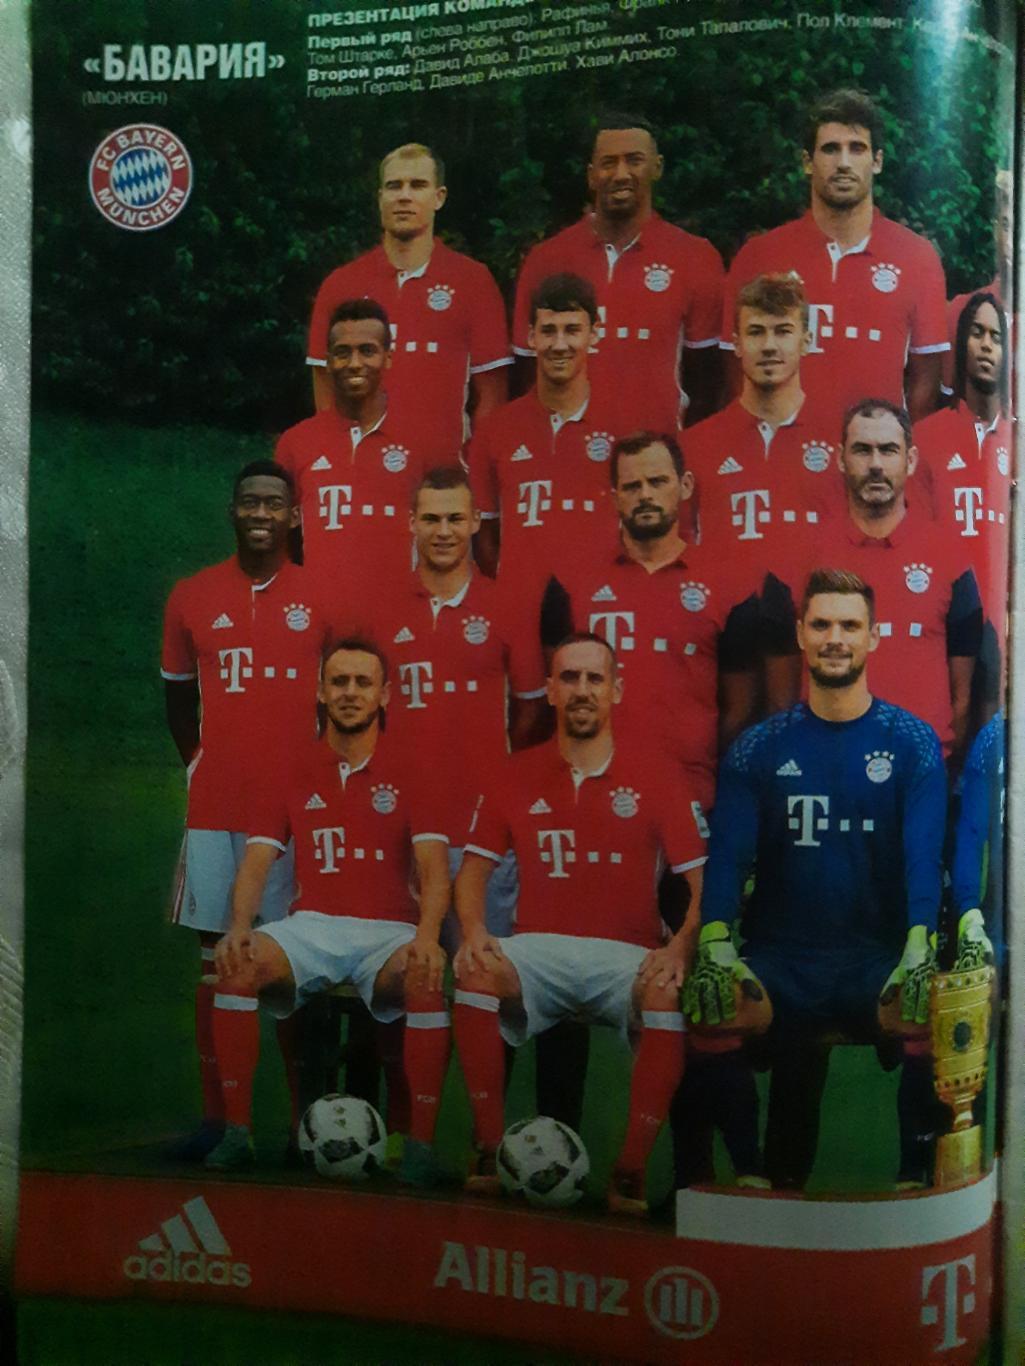 еженедельник Футбол #67 2016, постер: Бавария... 1